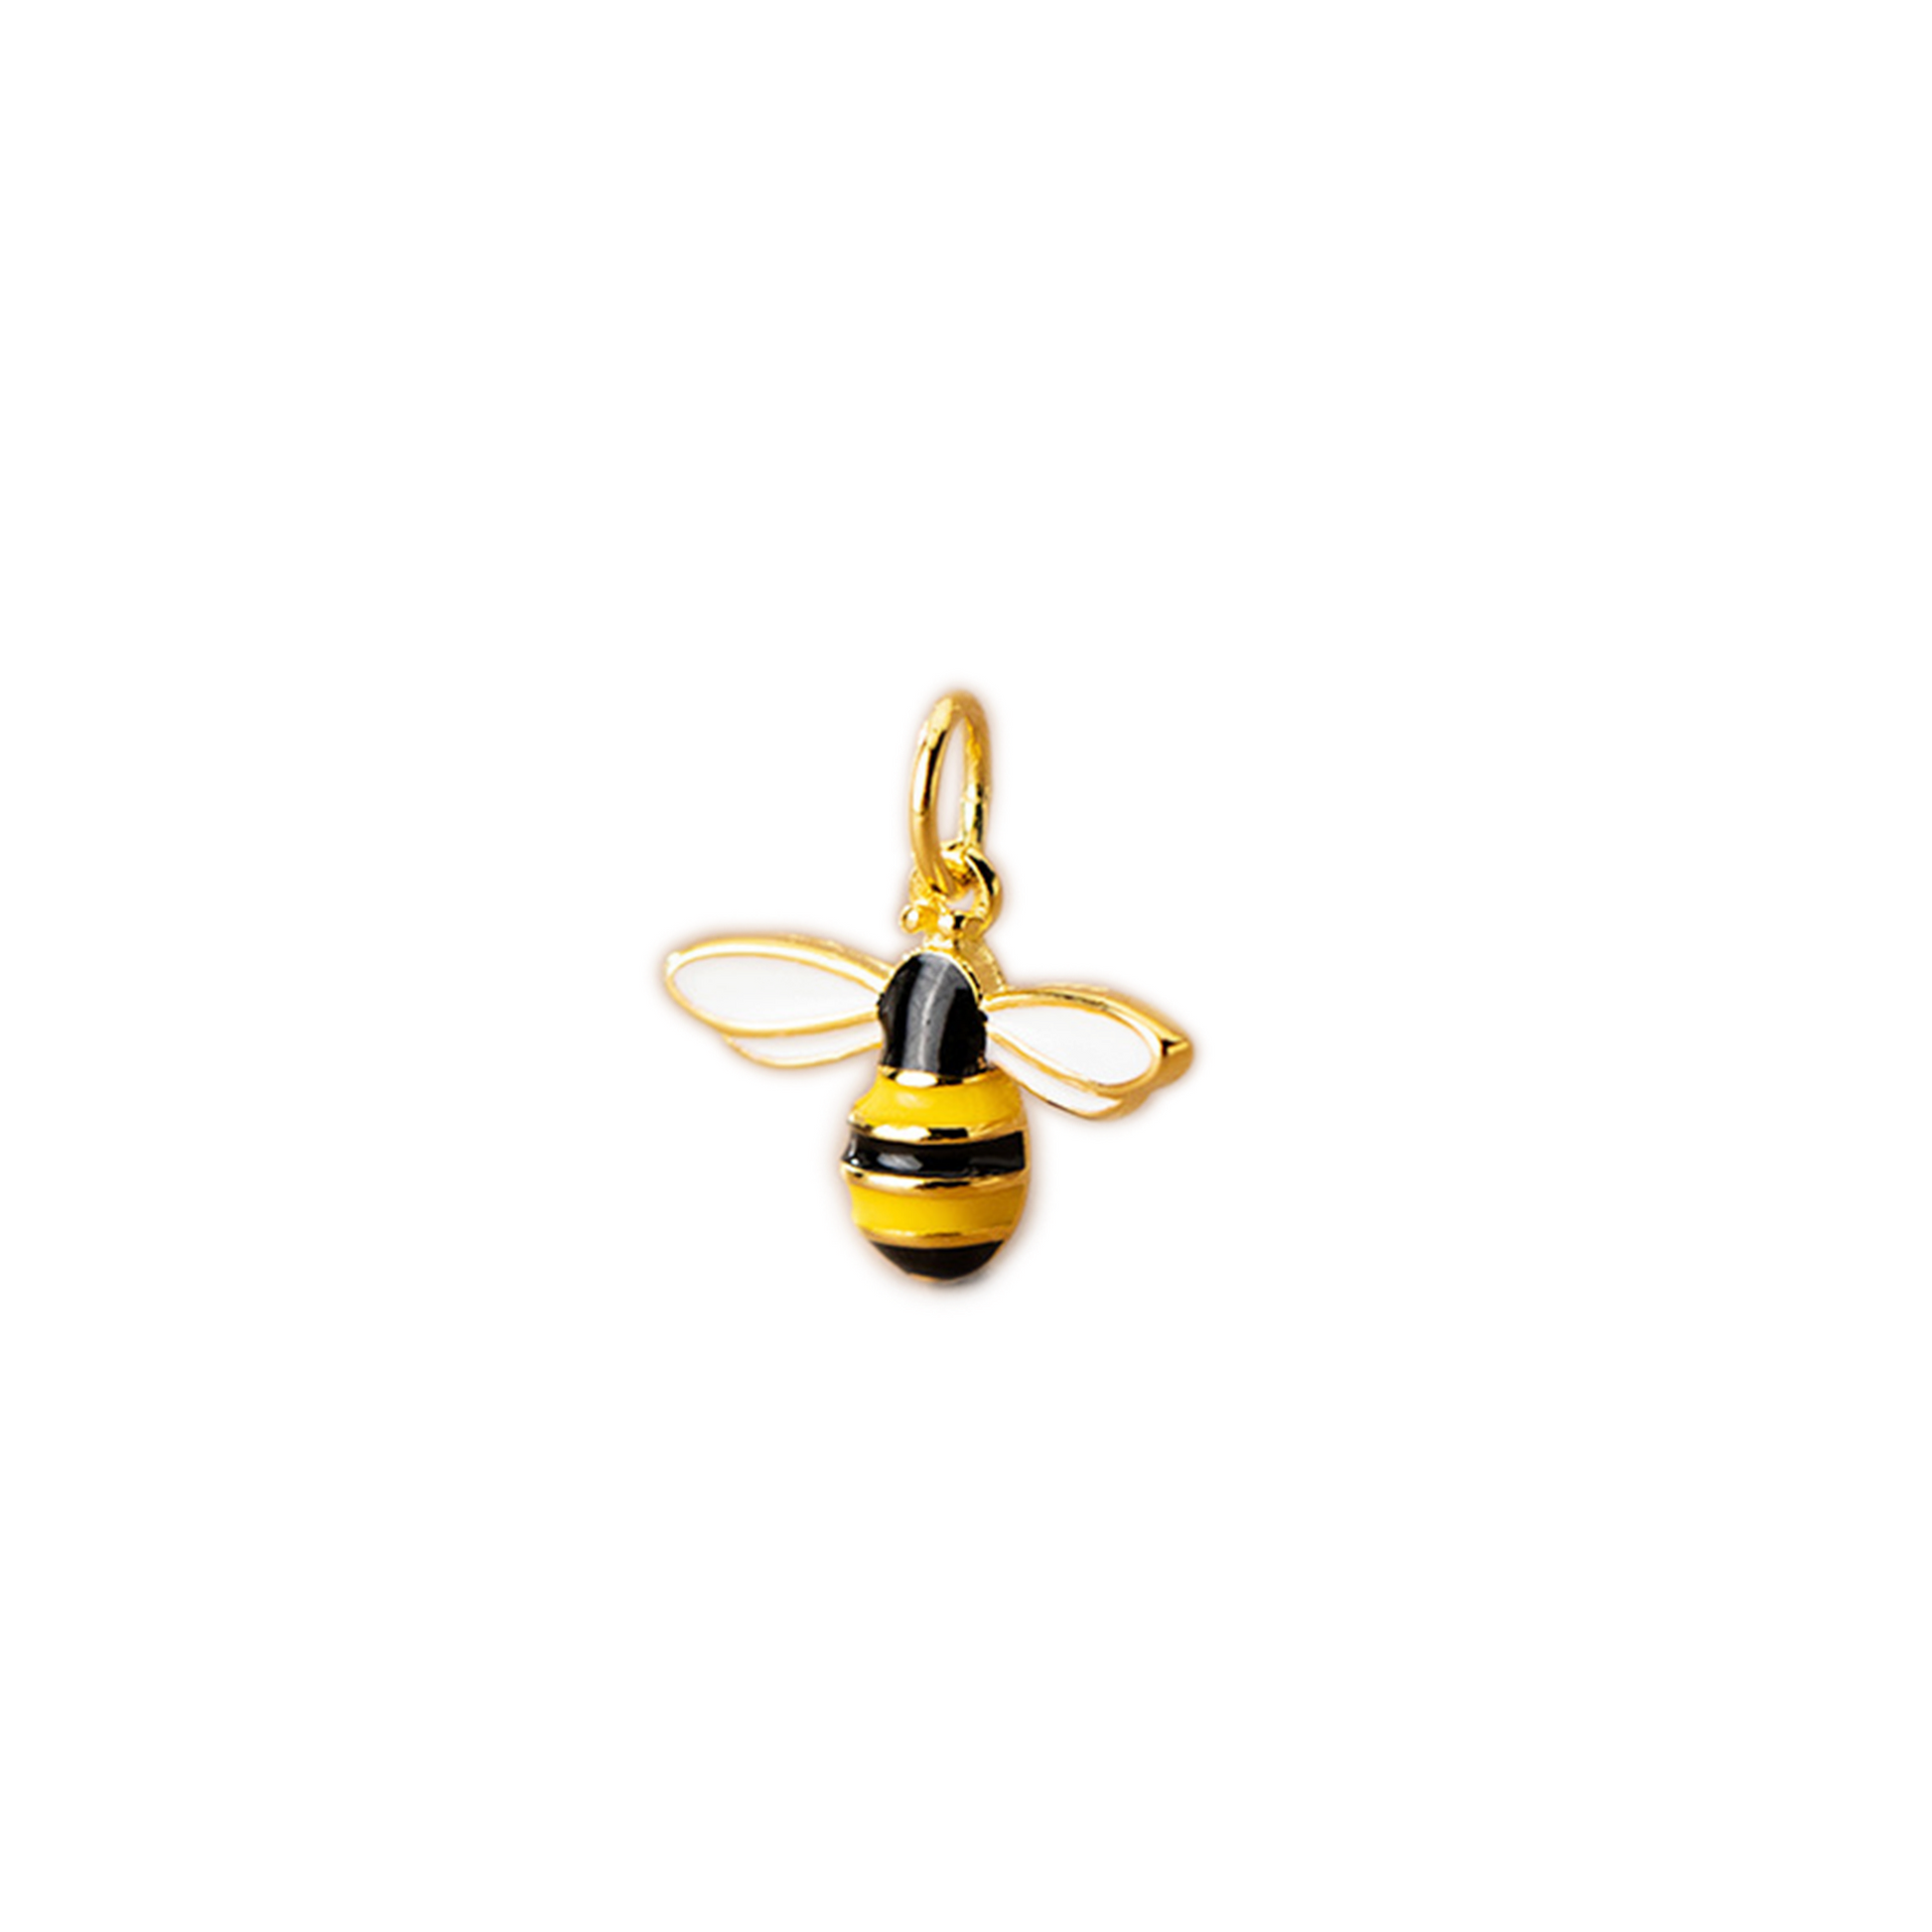 Gold on Sterling Silver Enamel Honey Bee Necklace Bracelet Charm Pendant - sugarkittenlondon